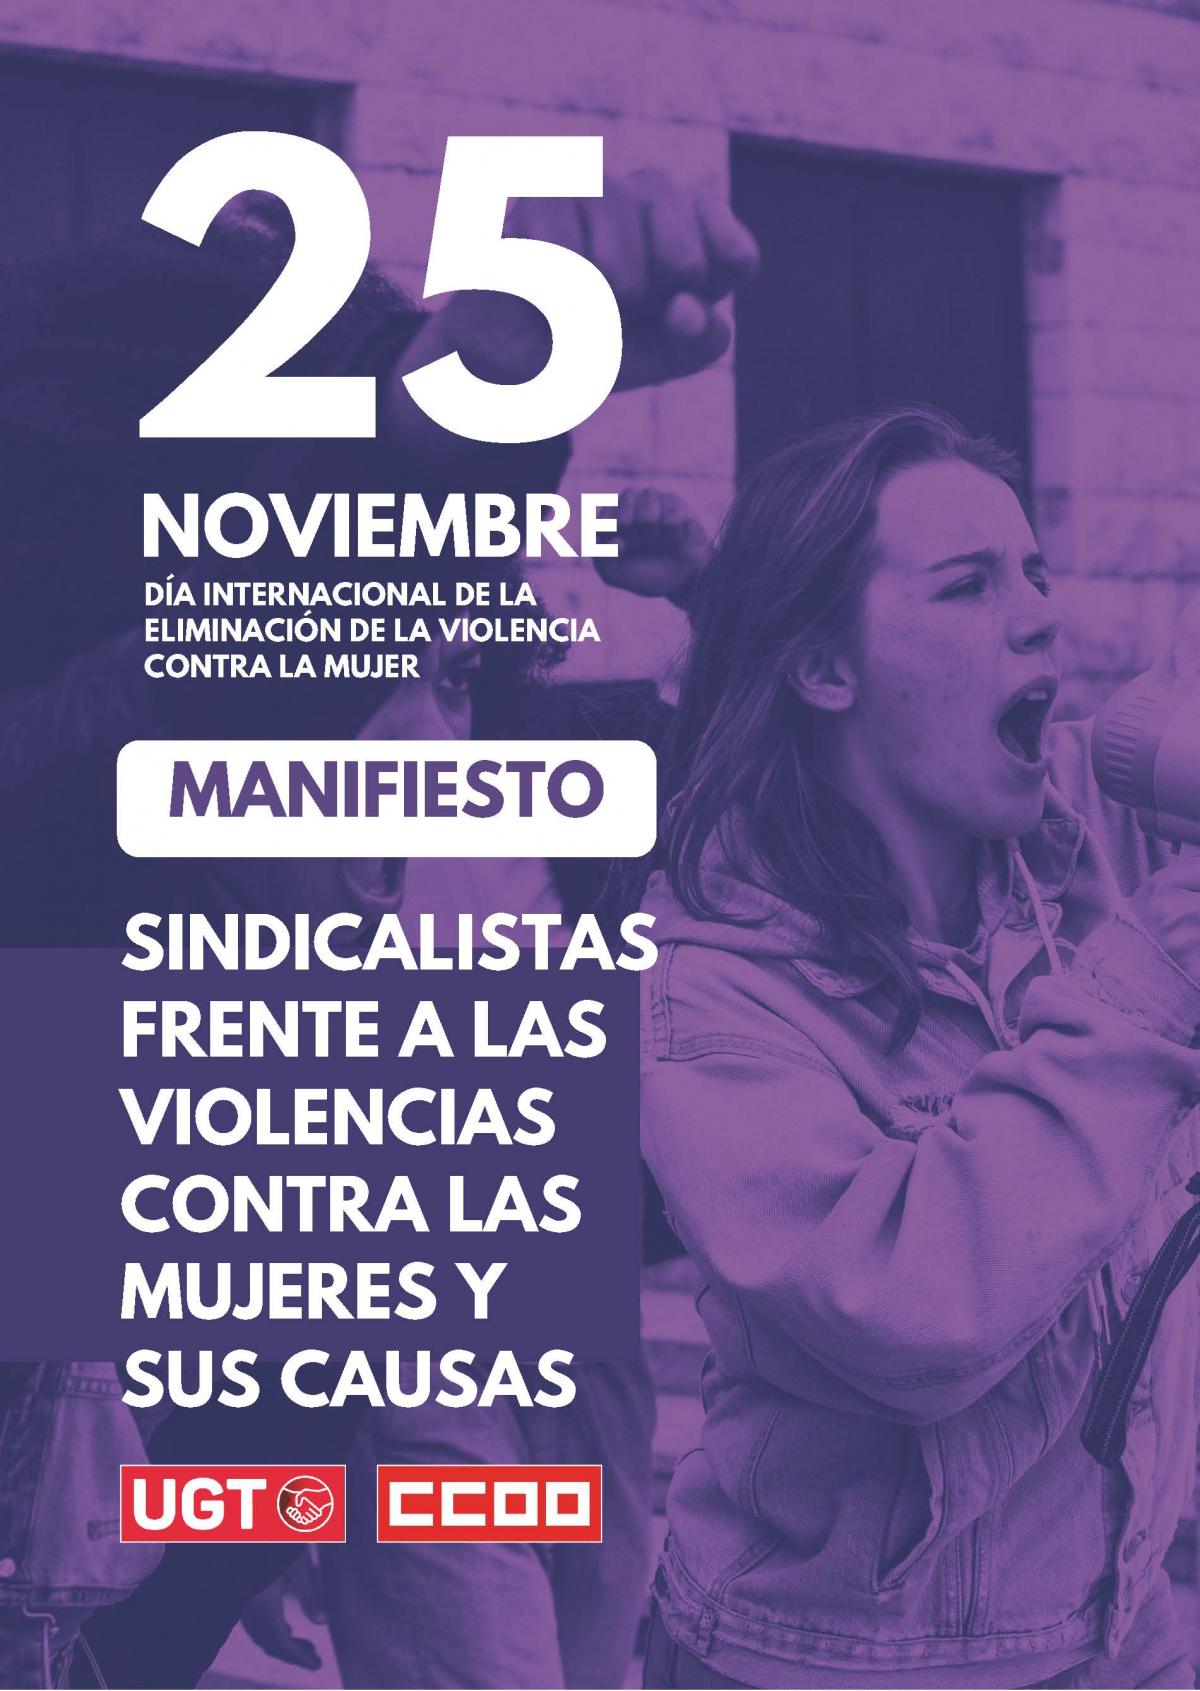 Manifesto UGT-CCOO con motivo del 25N Da Internacional de la Eliminacin de la Violencia contra las Mujeres.